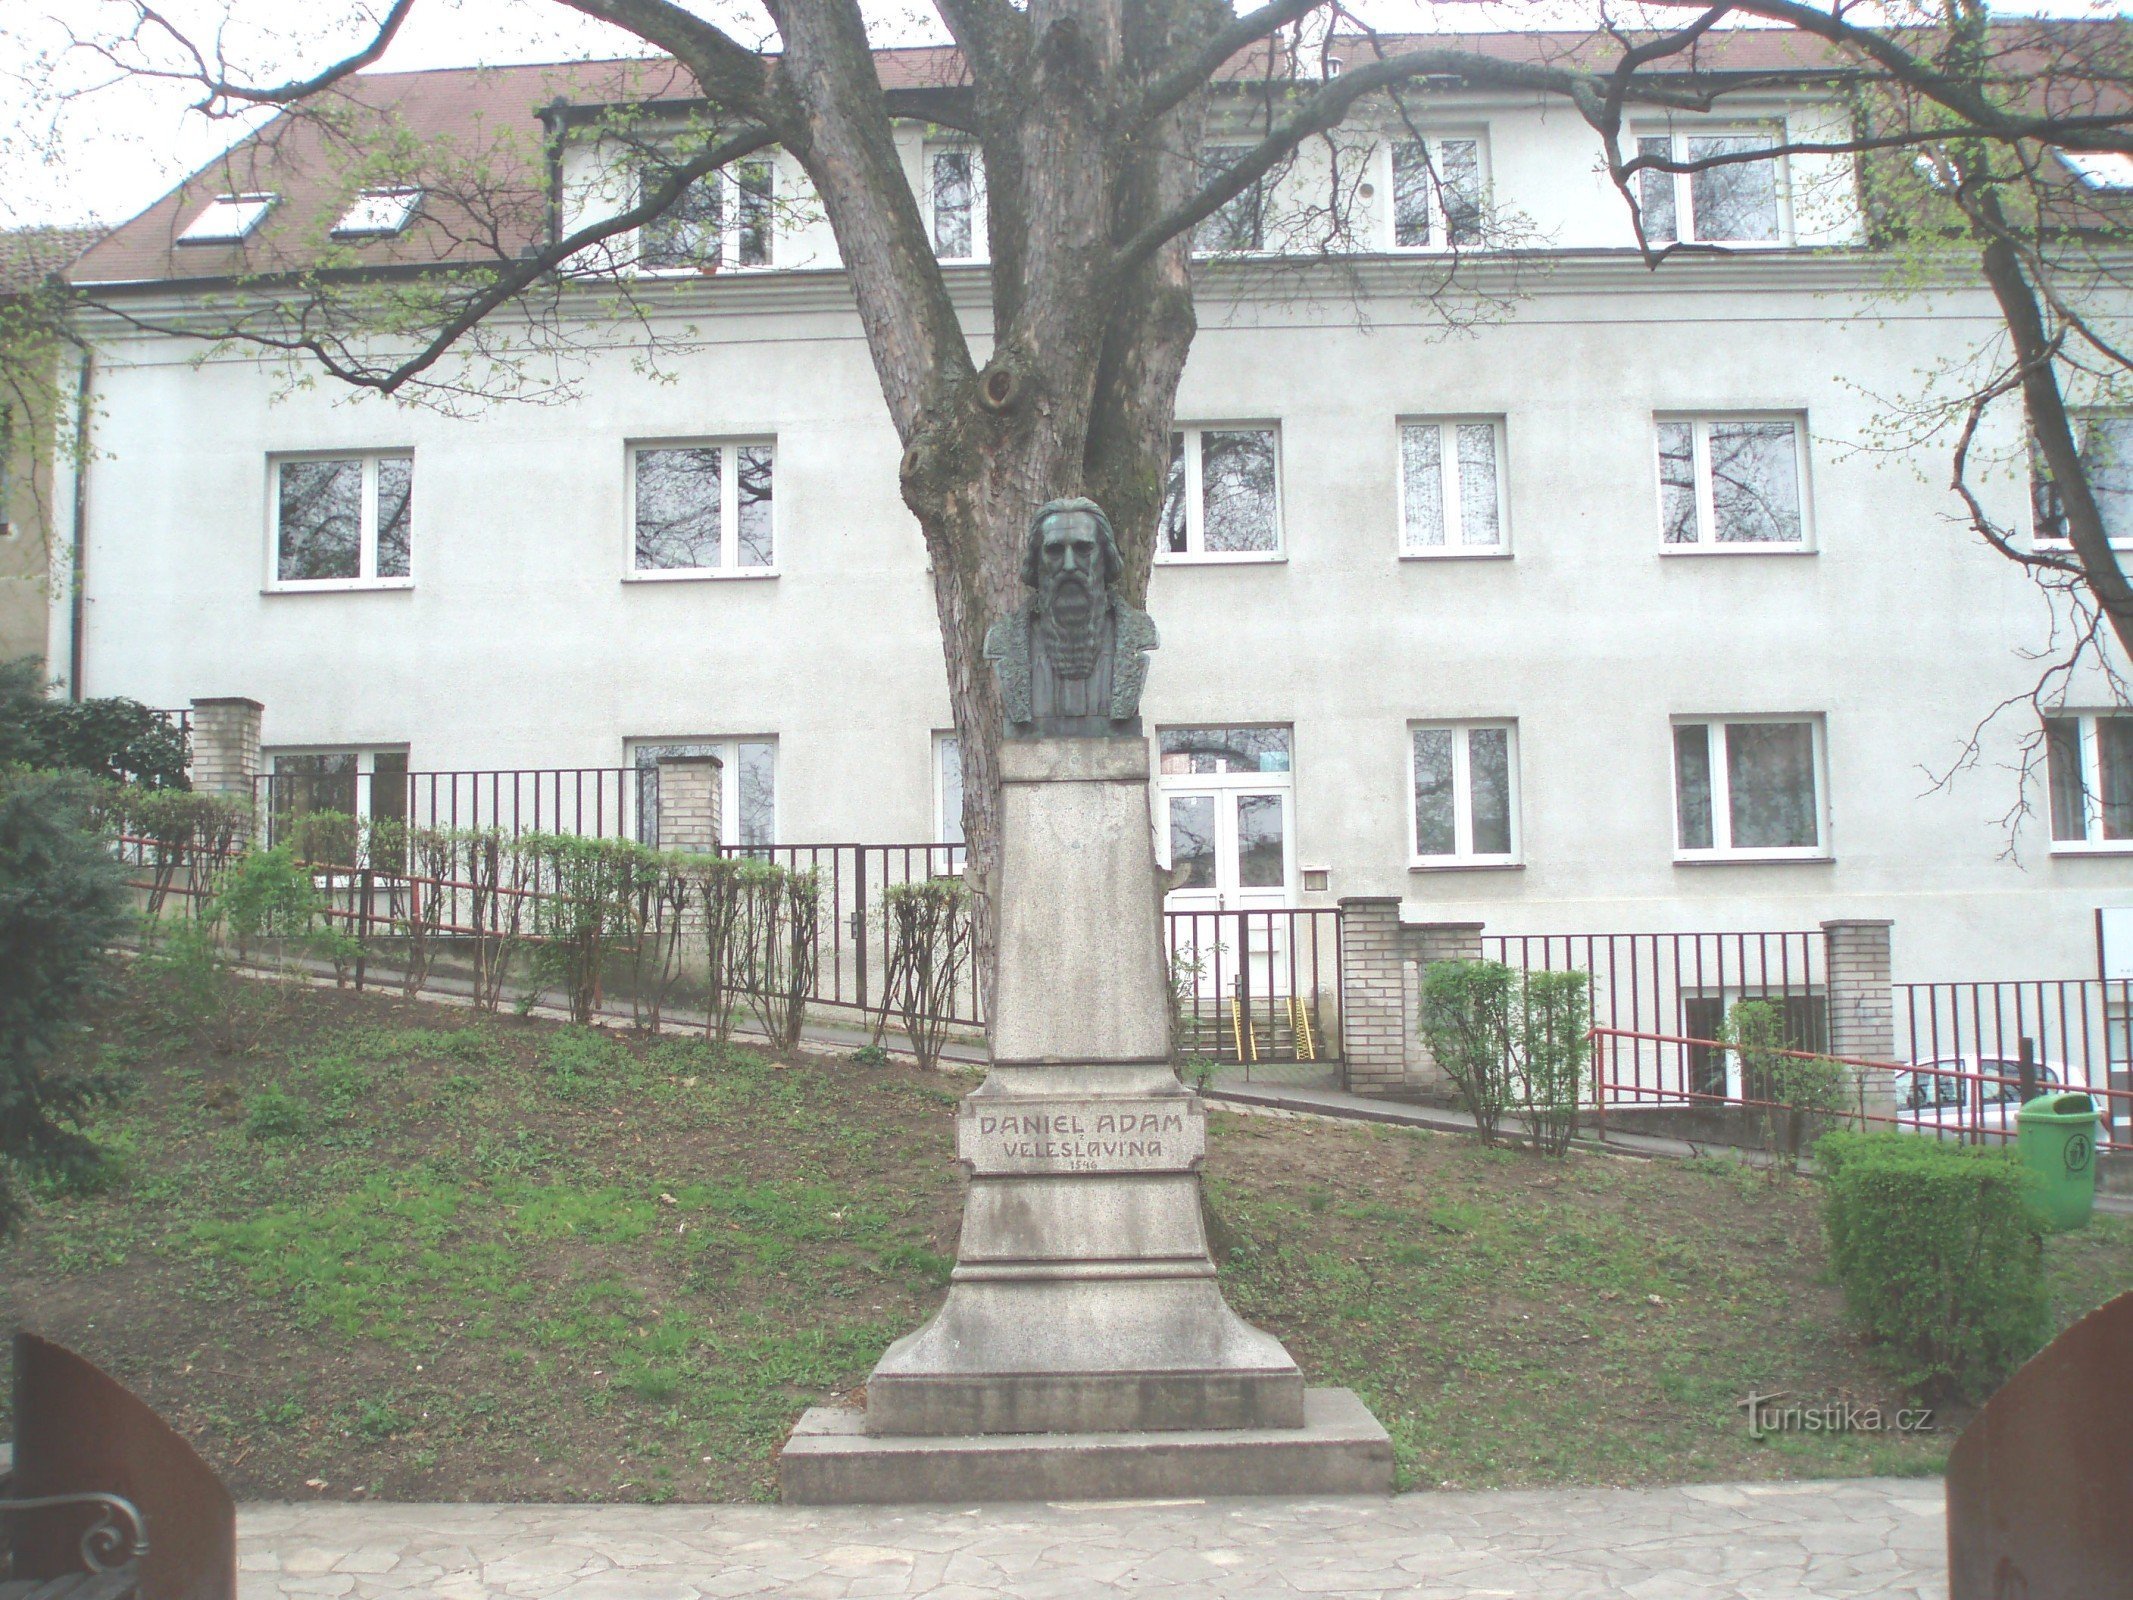 Monumentul lui Daniel Adam din Veleslavín